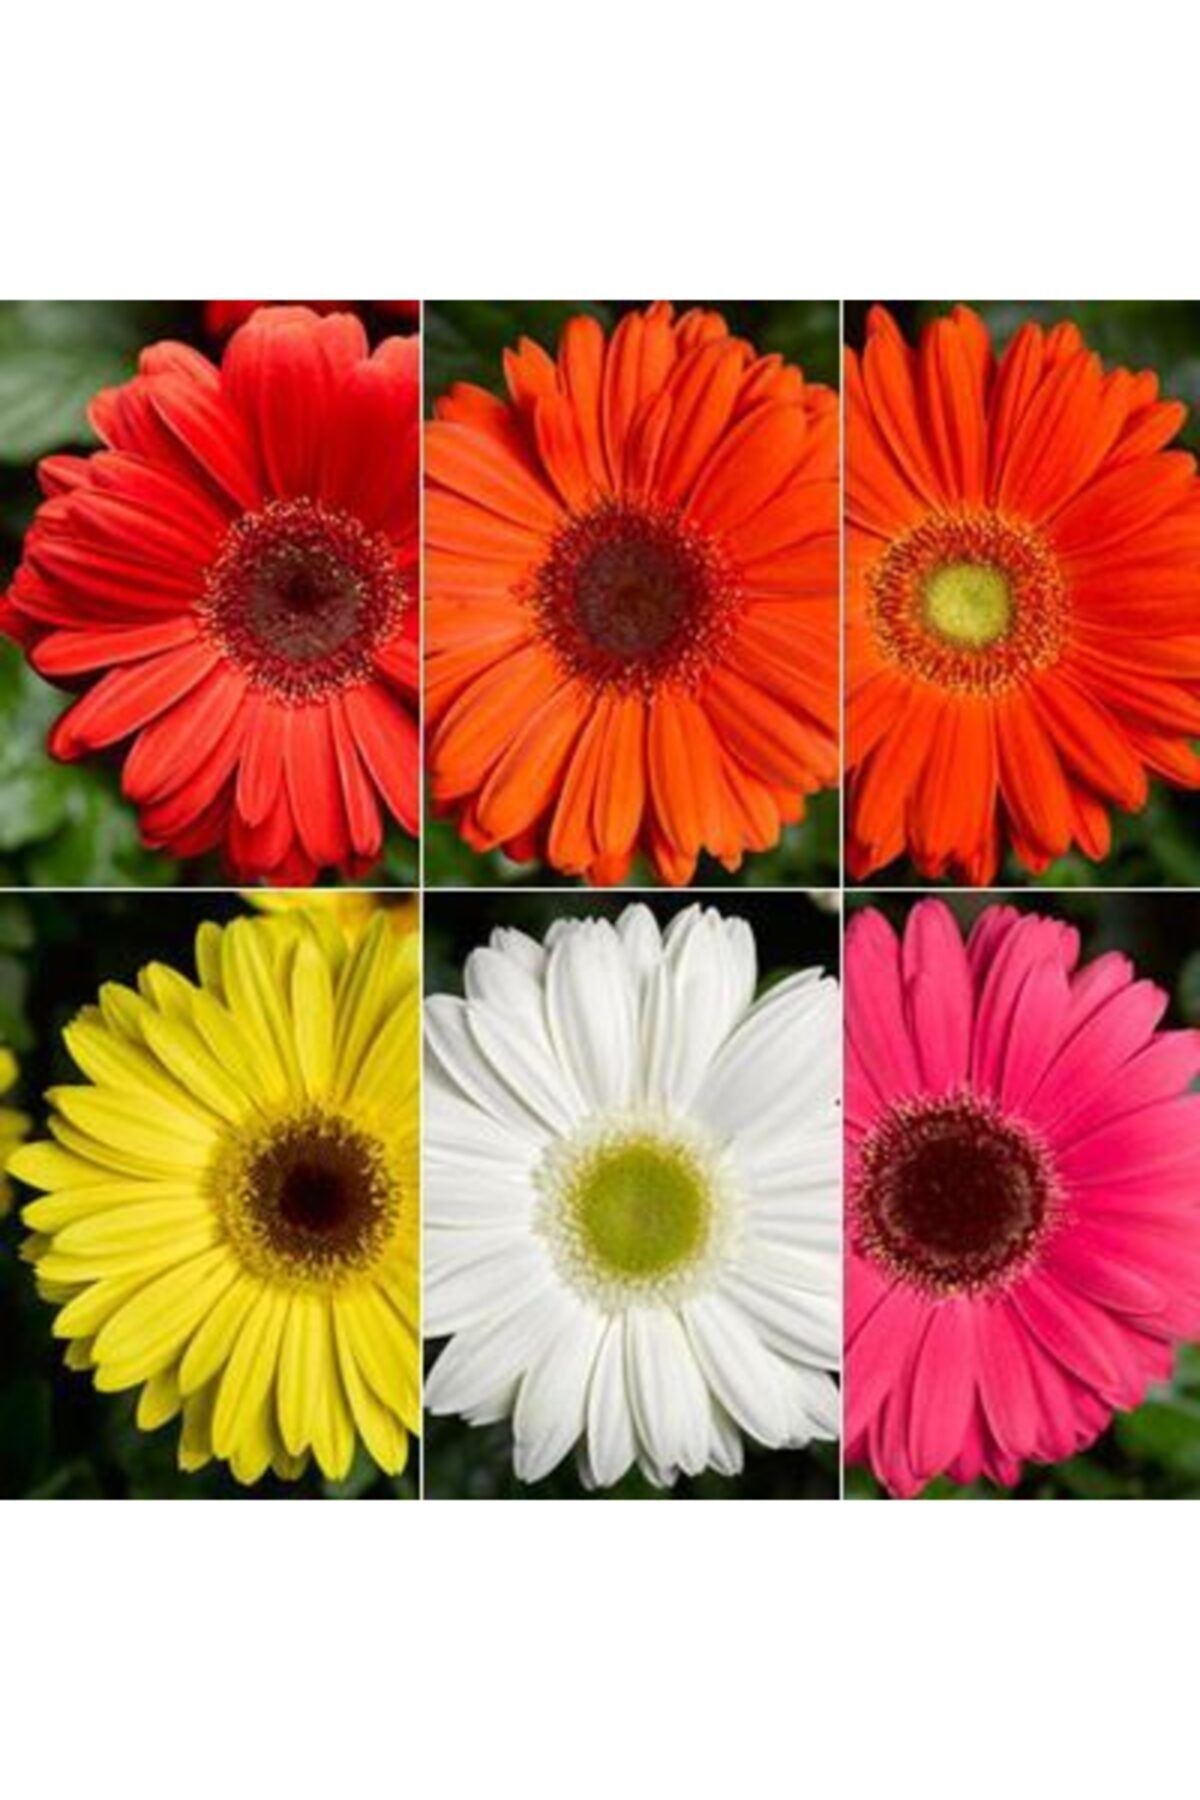 CAYKA 100 Adet Karışık Renk Gerbera Çiçeği Tohum+10 Adet Hediye Karışık Renk Lale Çiçek Tohum+kargo Bedava